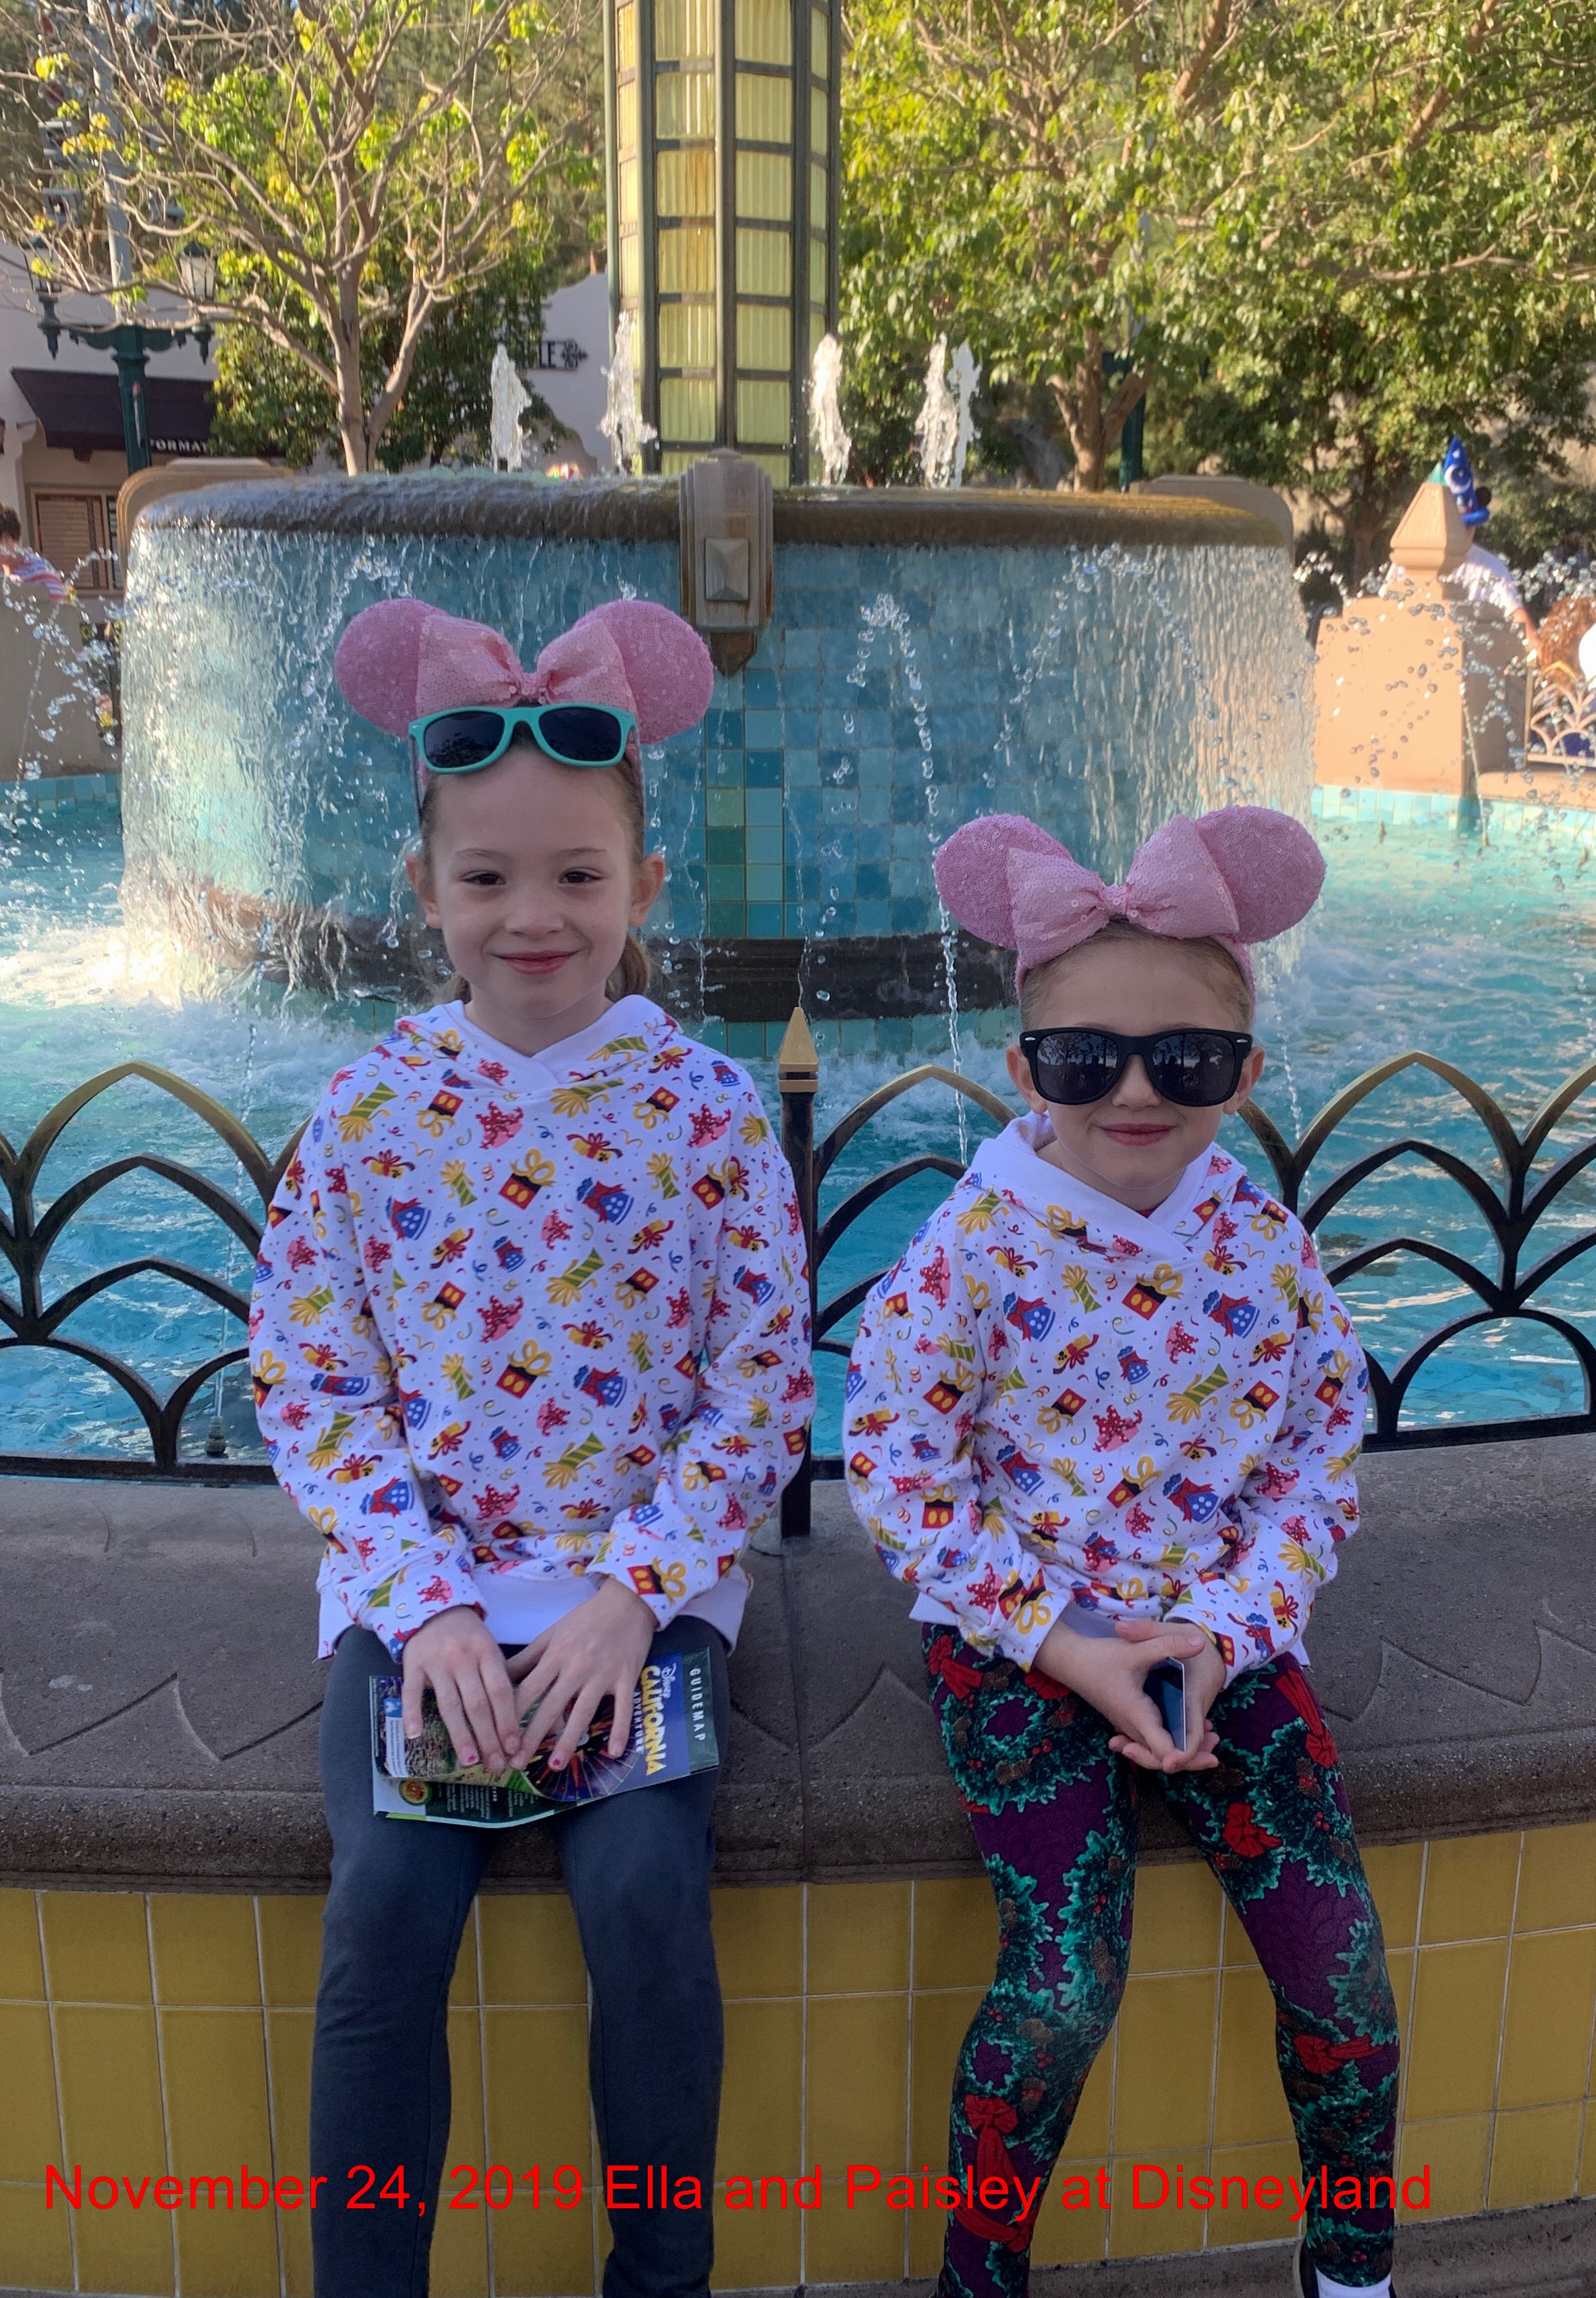 Nov 24, 2019 Ella and Paisley in Disneyland with Dad.